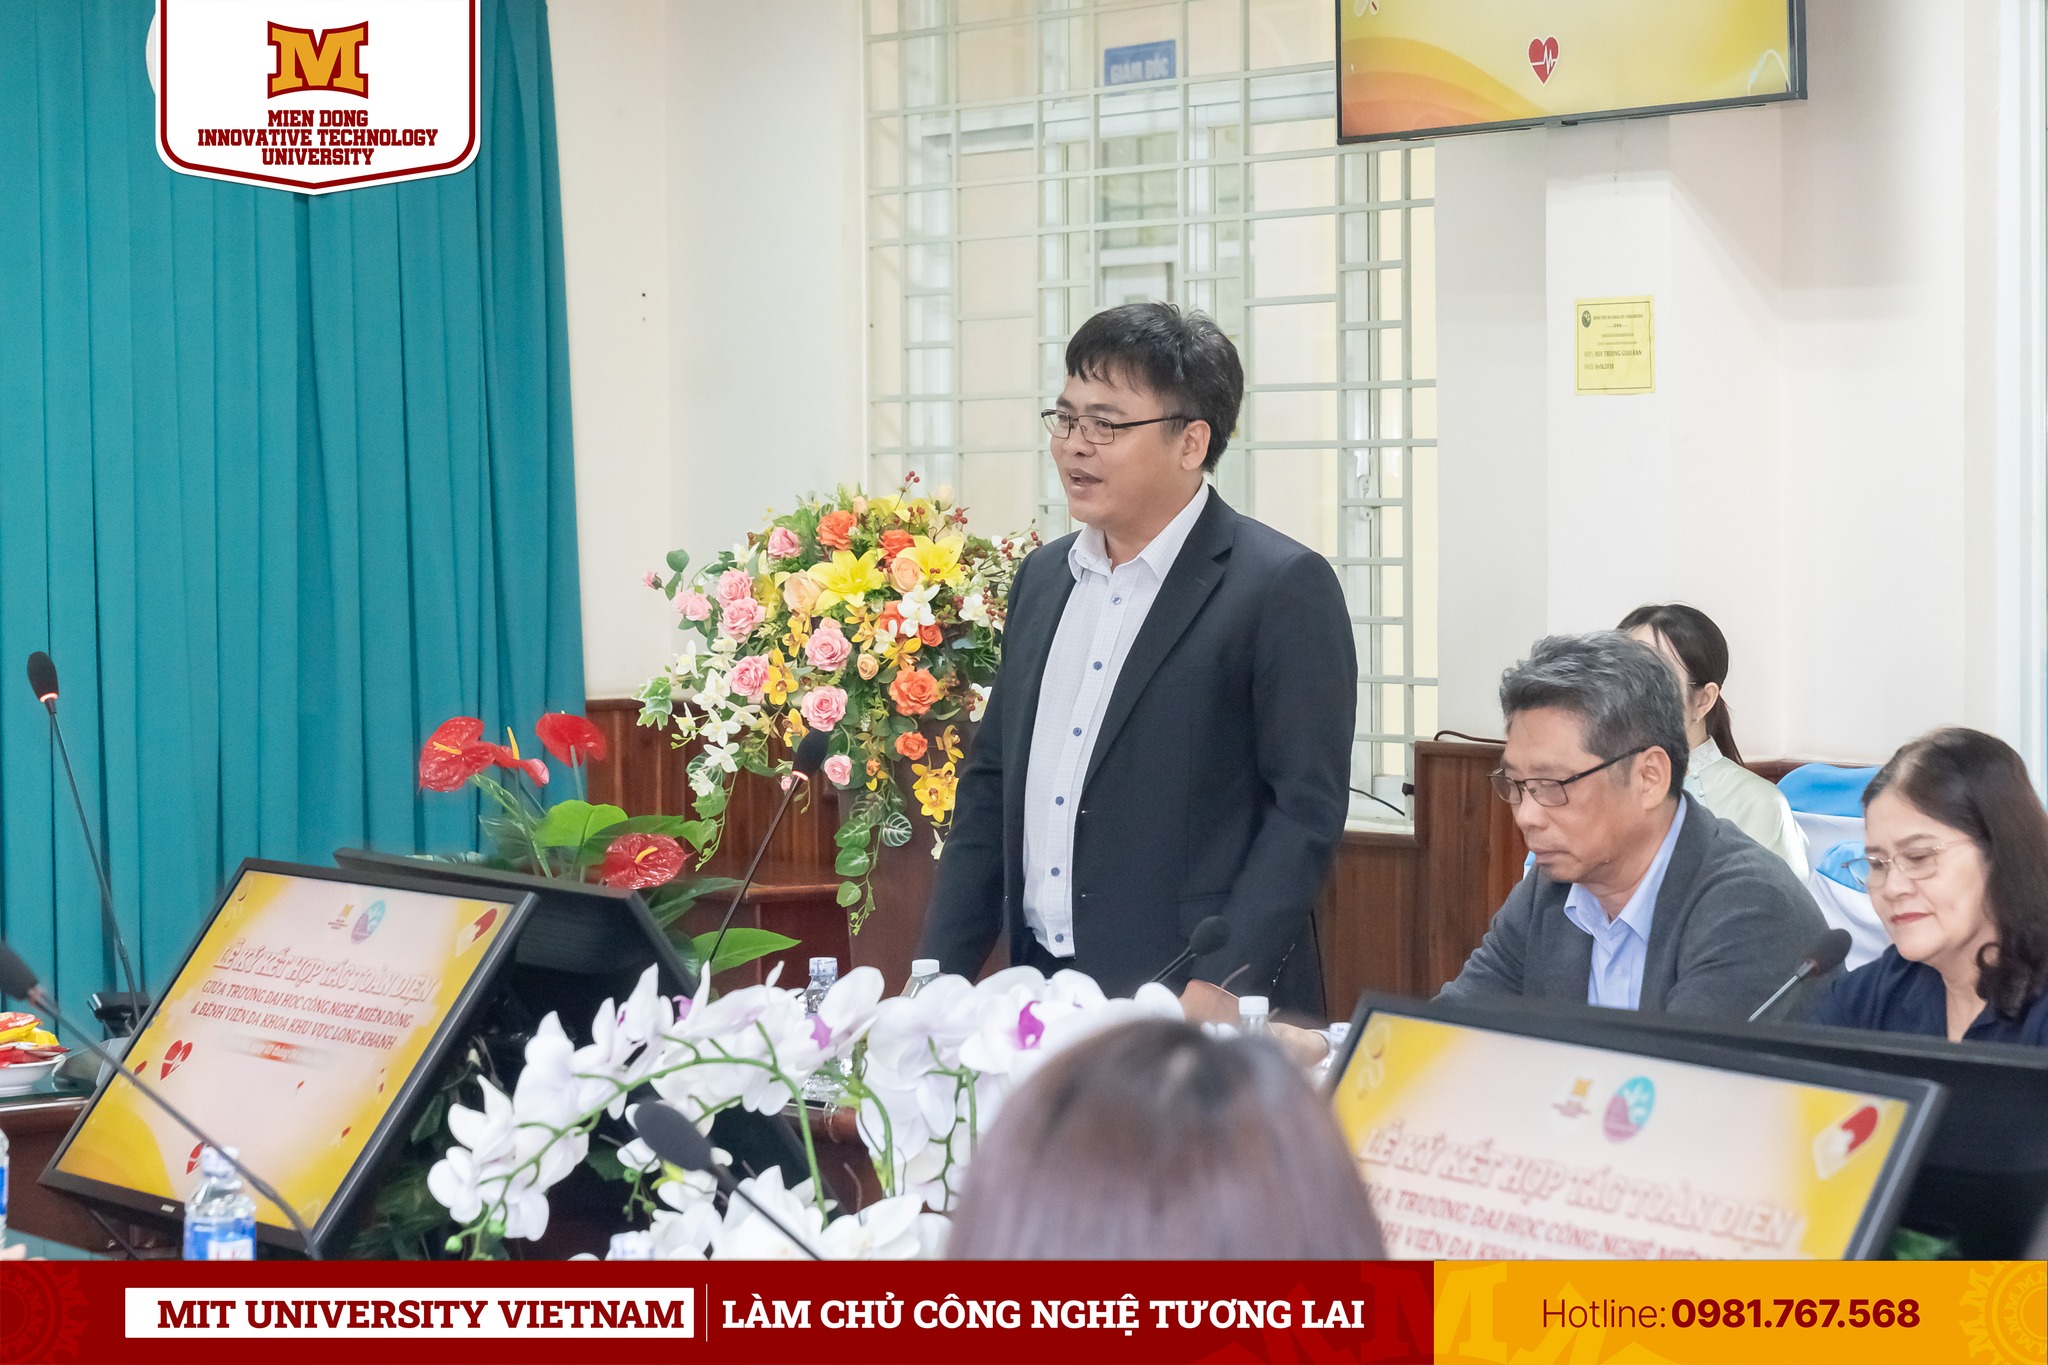 PGS.TS Phạm Văn Song - Hiệu trưởng nhà trường phát biểu